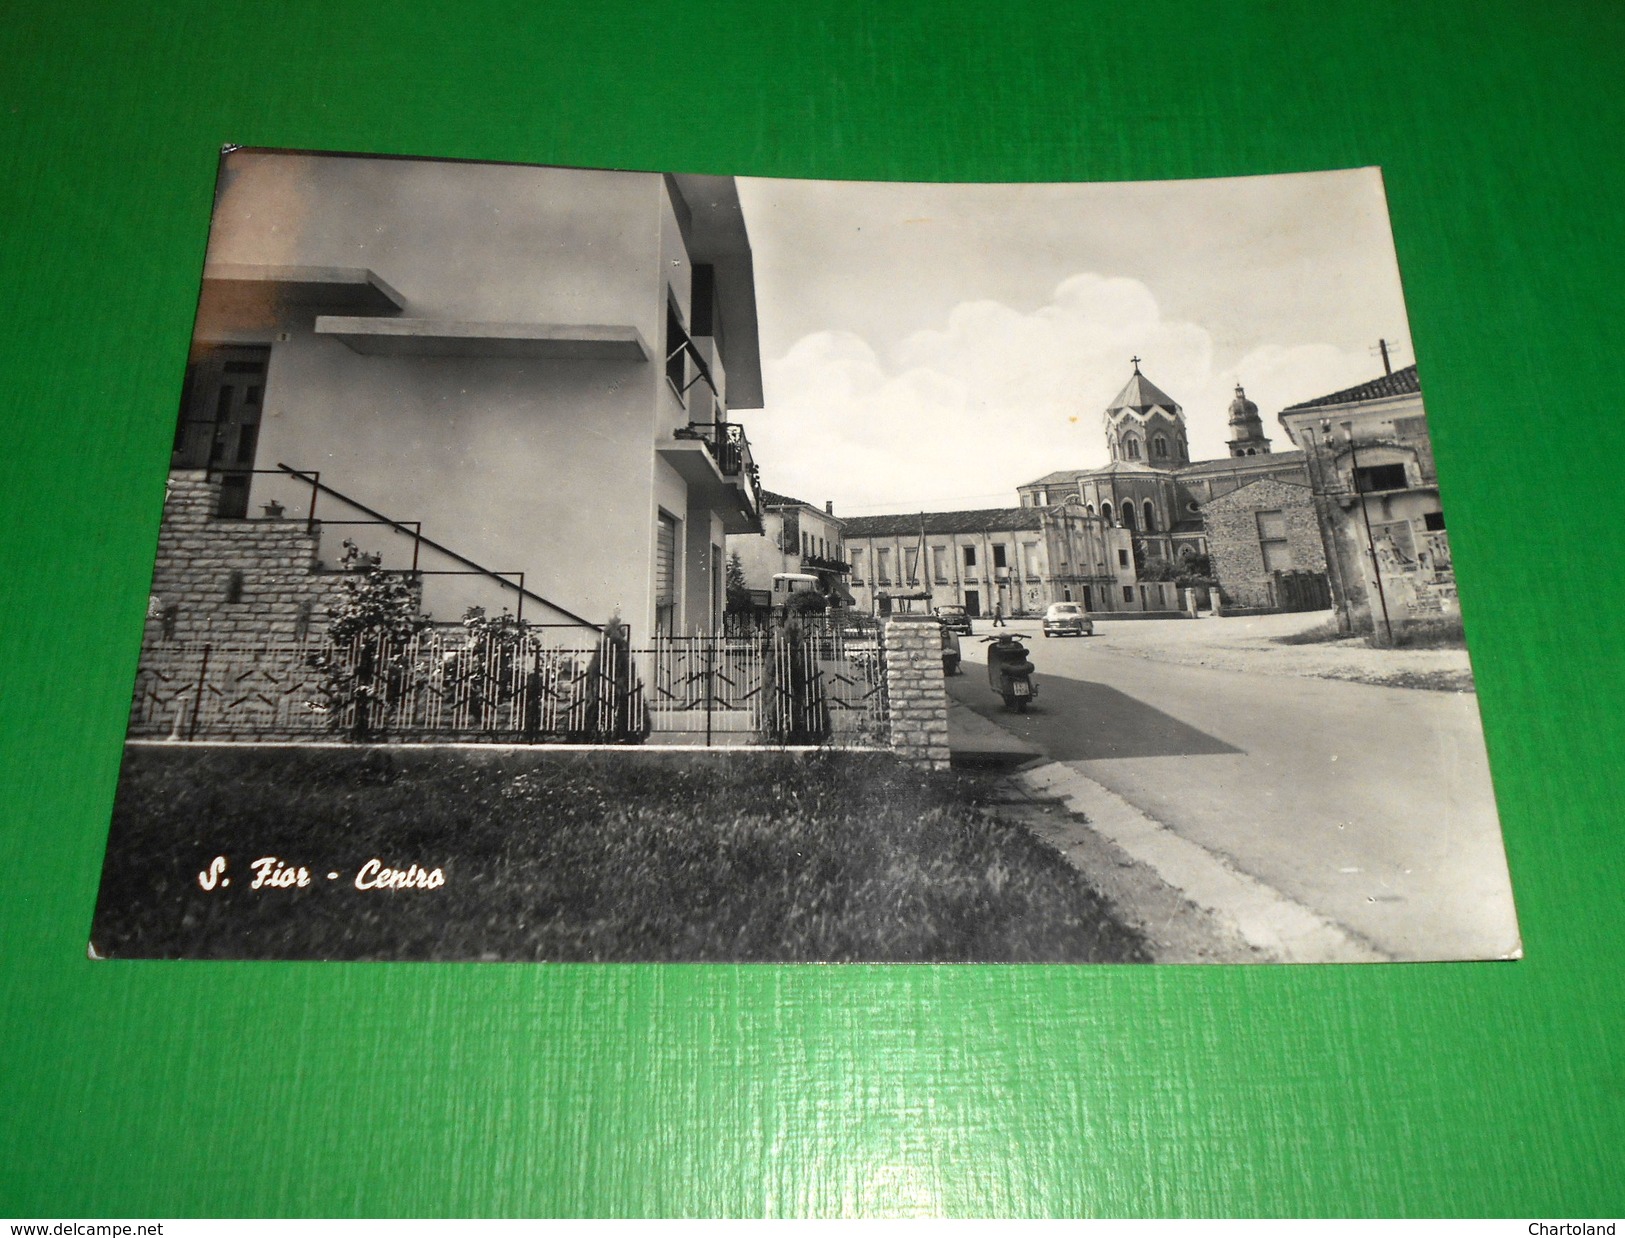 Cartolina San Fior - Centro 1965 - Treviso